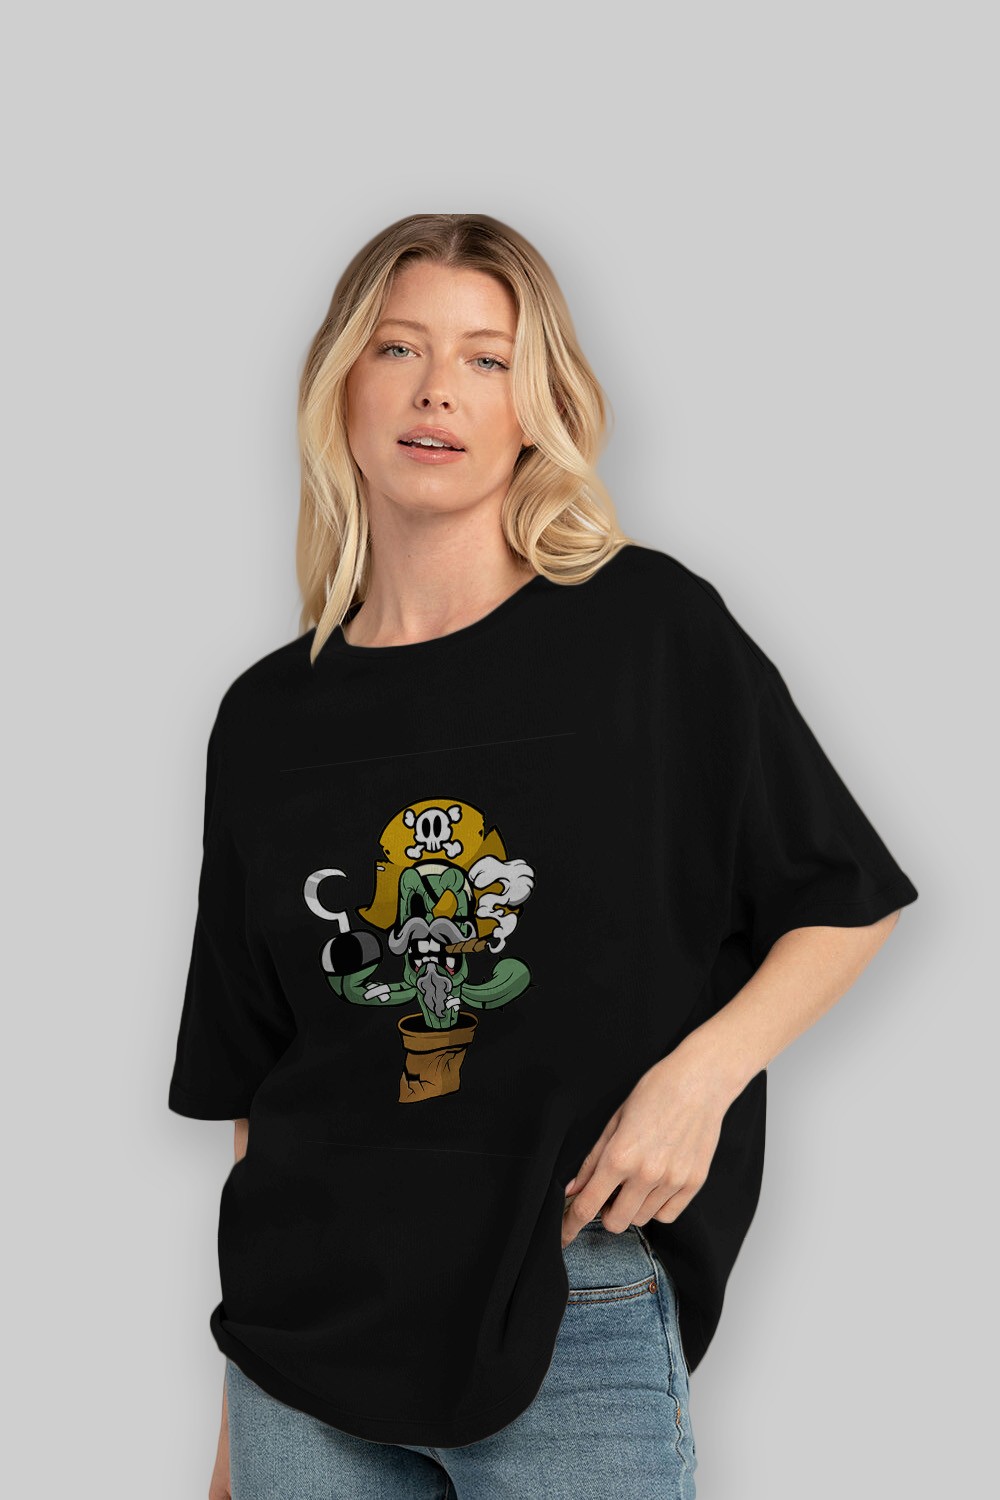 Pirate Cactus Ön Baskılı Oversize t-shirt Erkek Kadın Unisex %100 Pamuk tişort